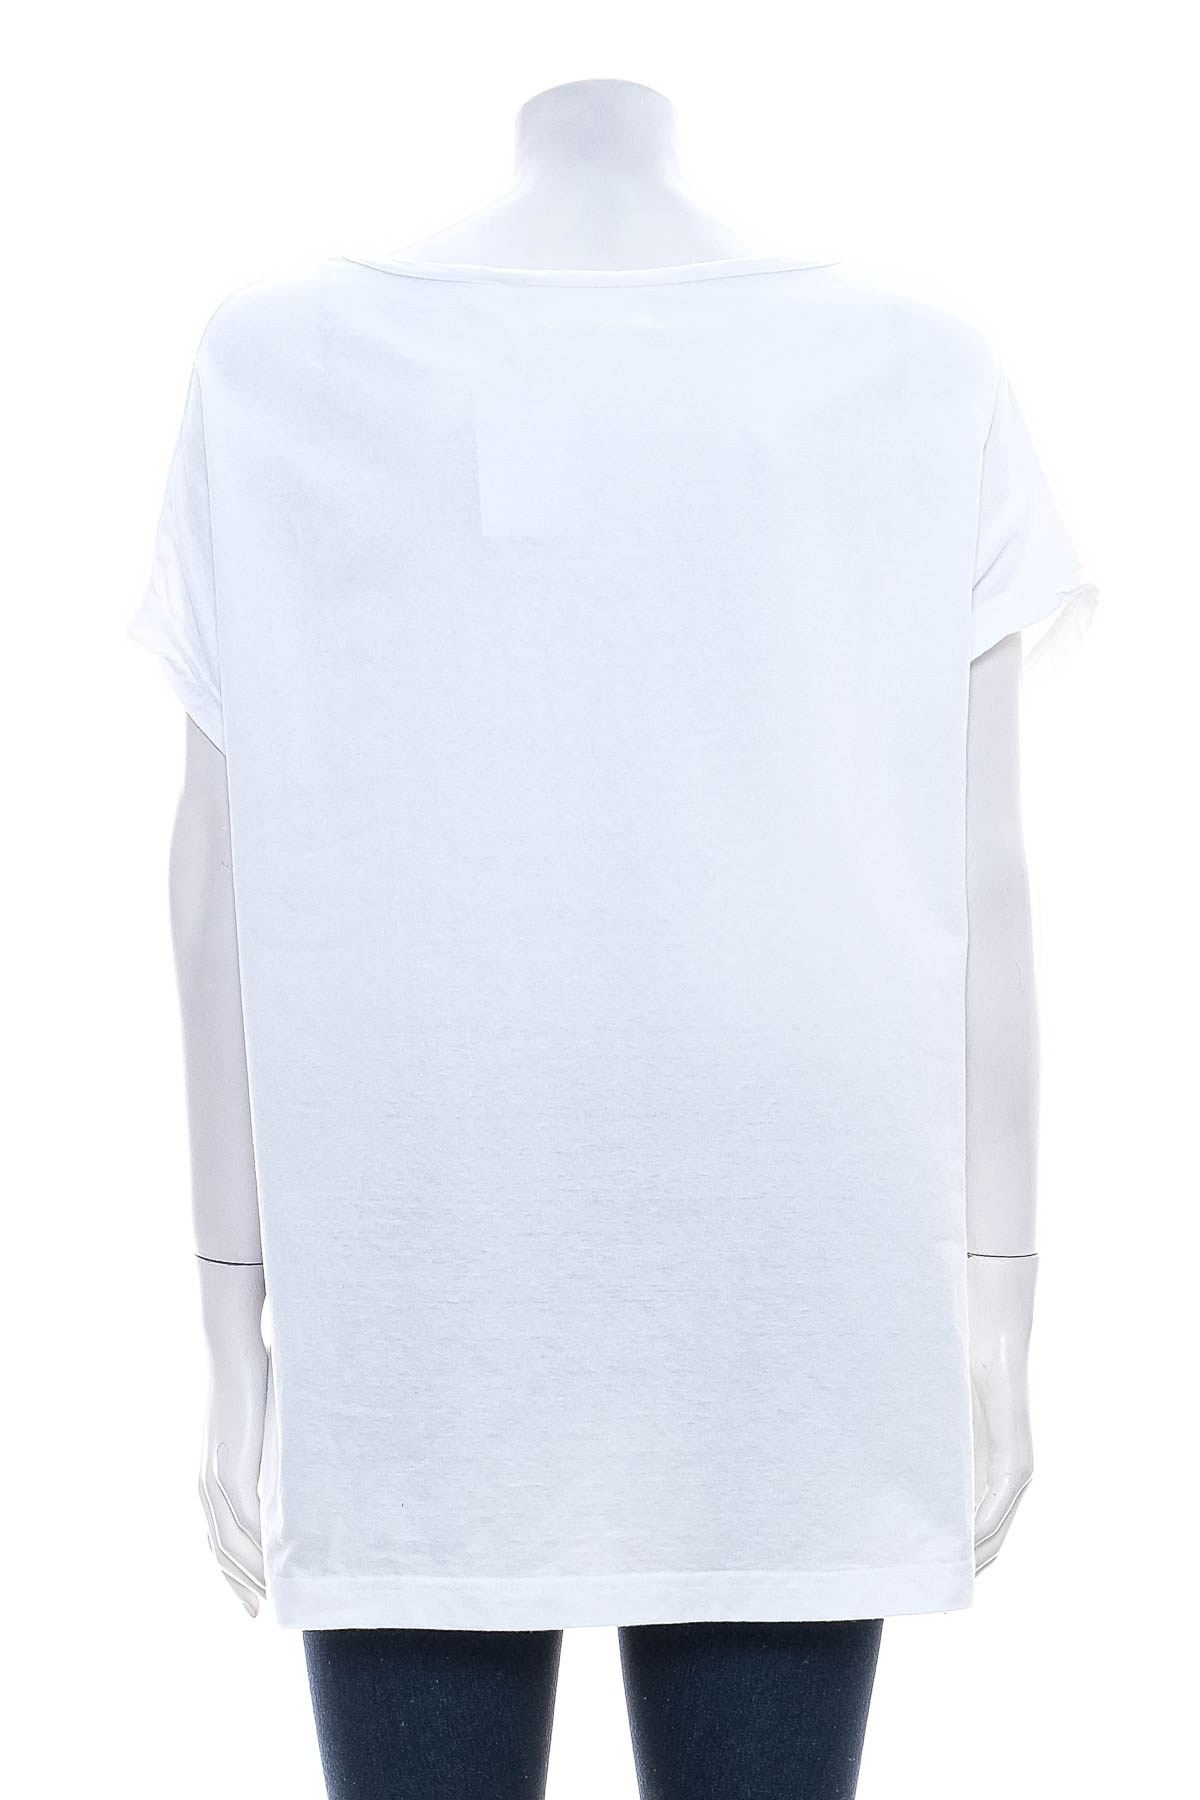 Γυναικείο μπλουζάκι - Bpc selection bonprix collection - 1